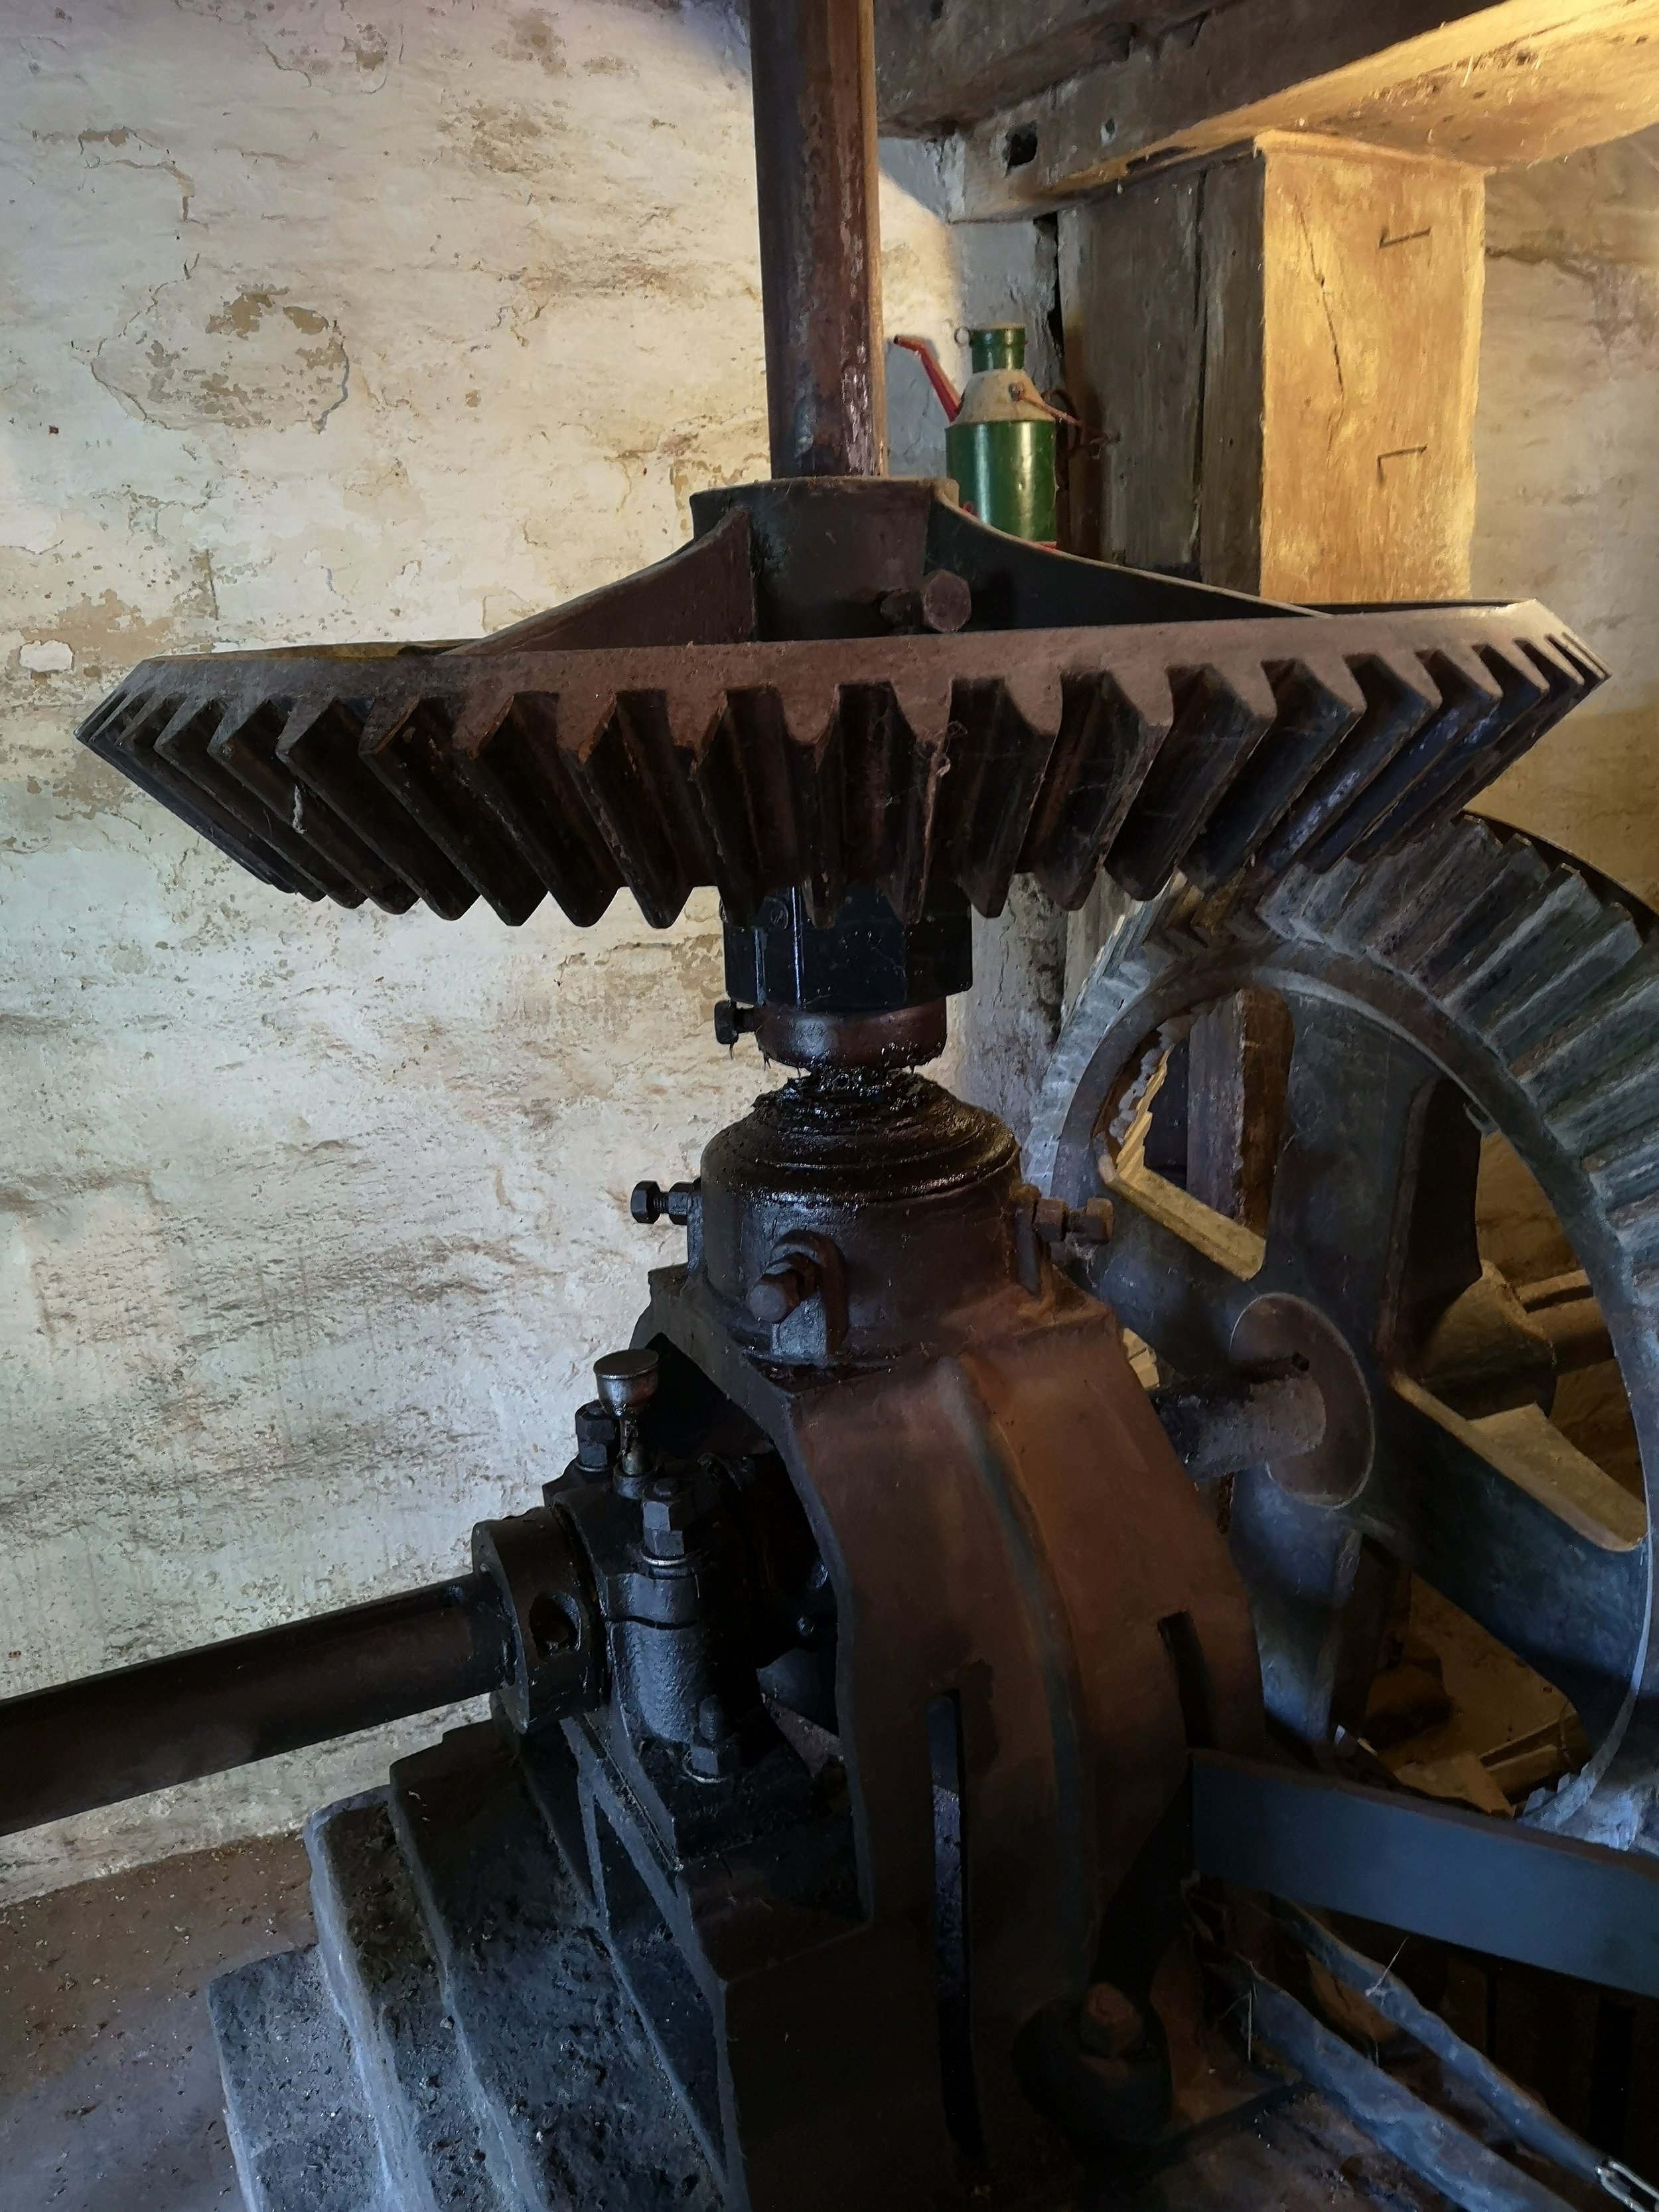 Machanics of the Schaloen water powered mill